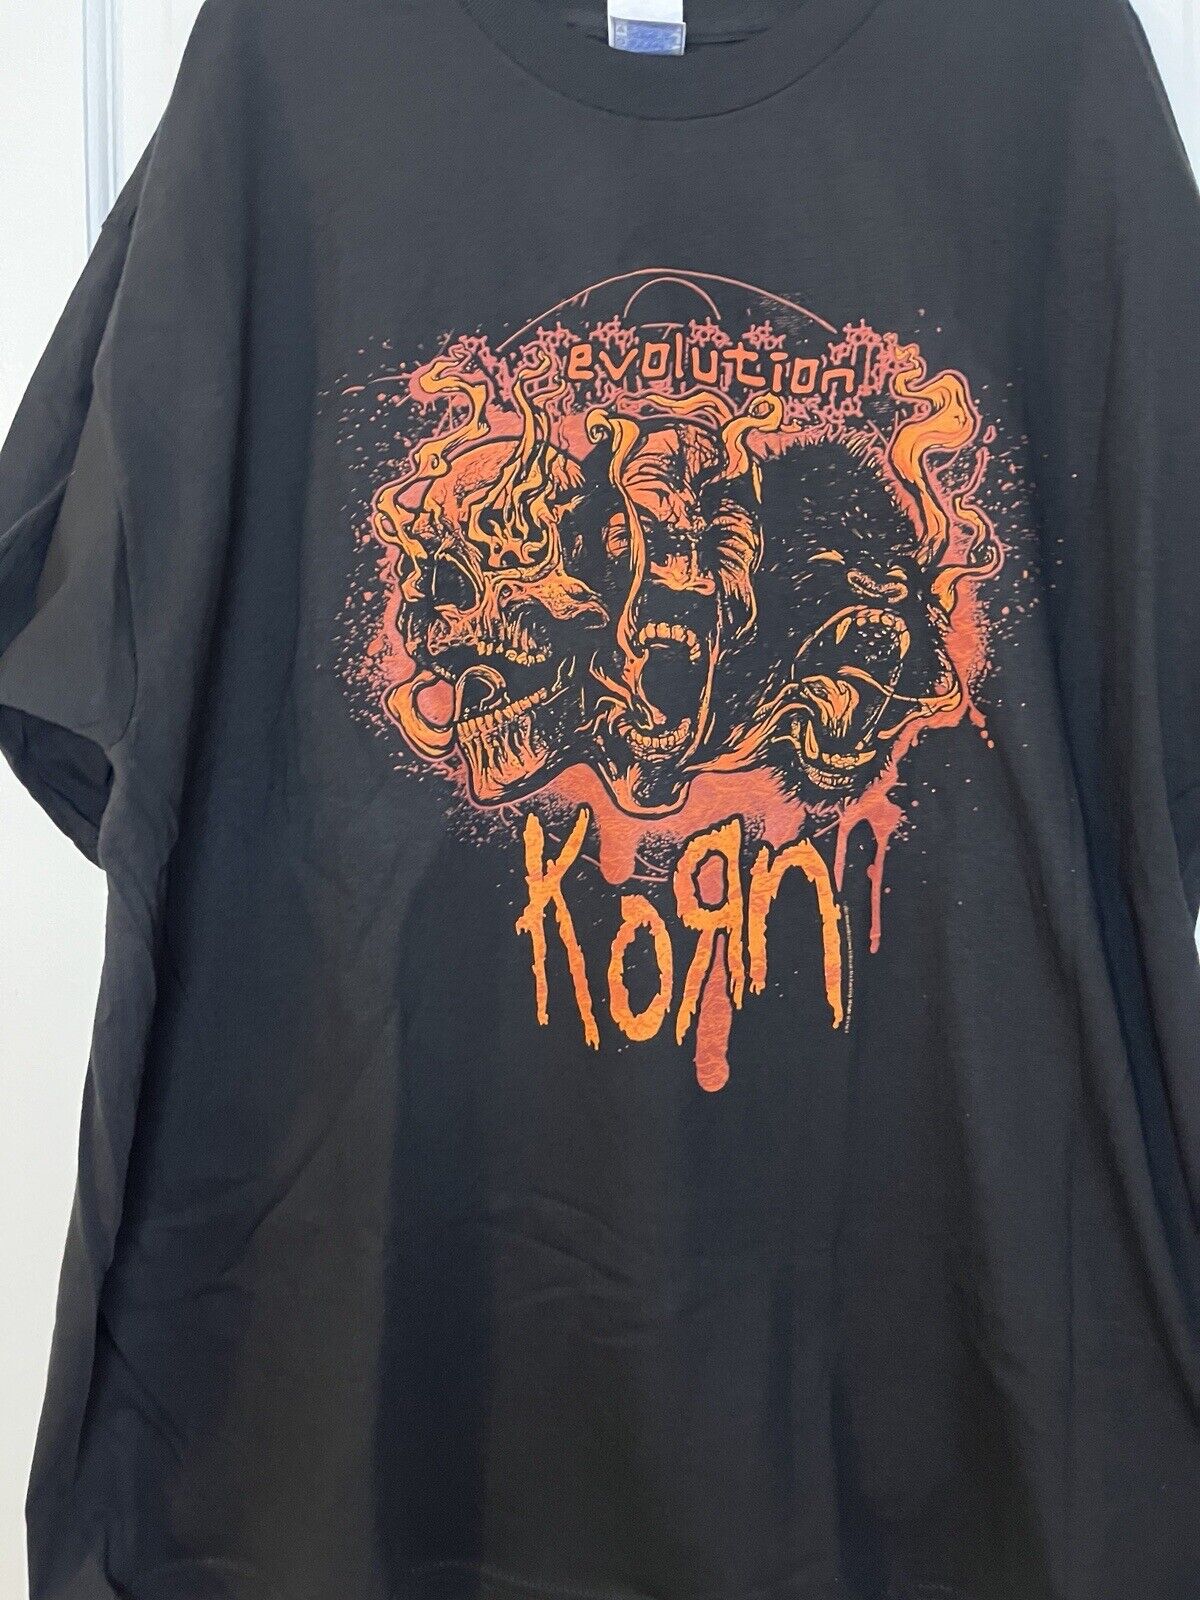 Vintage 2007 Korn Evolution Tour Tee Size XXLarge 2XL Metal Music Preowned